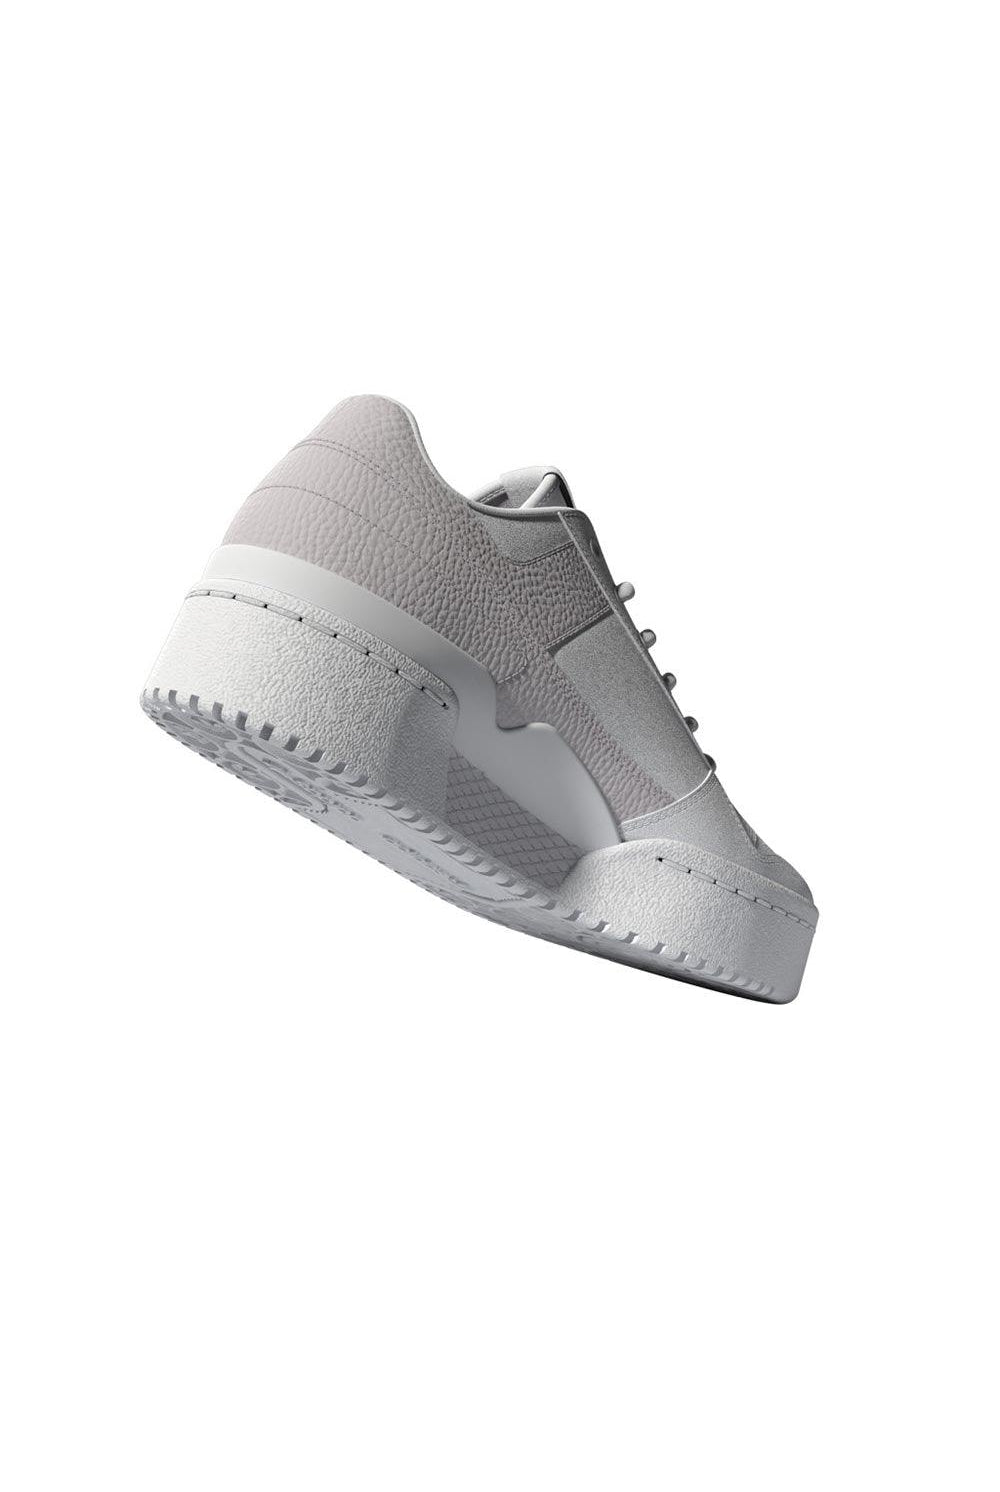 Adidas Forum Bold White/Pink 13 | Milagron